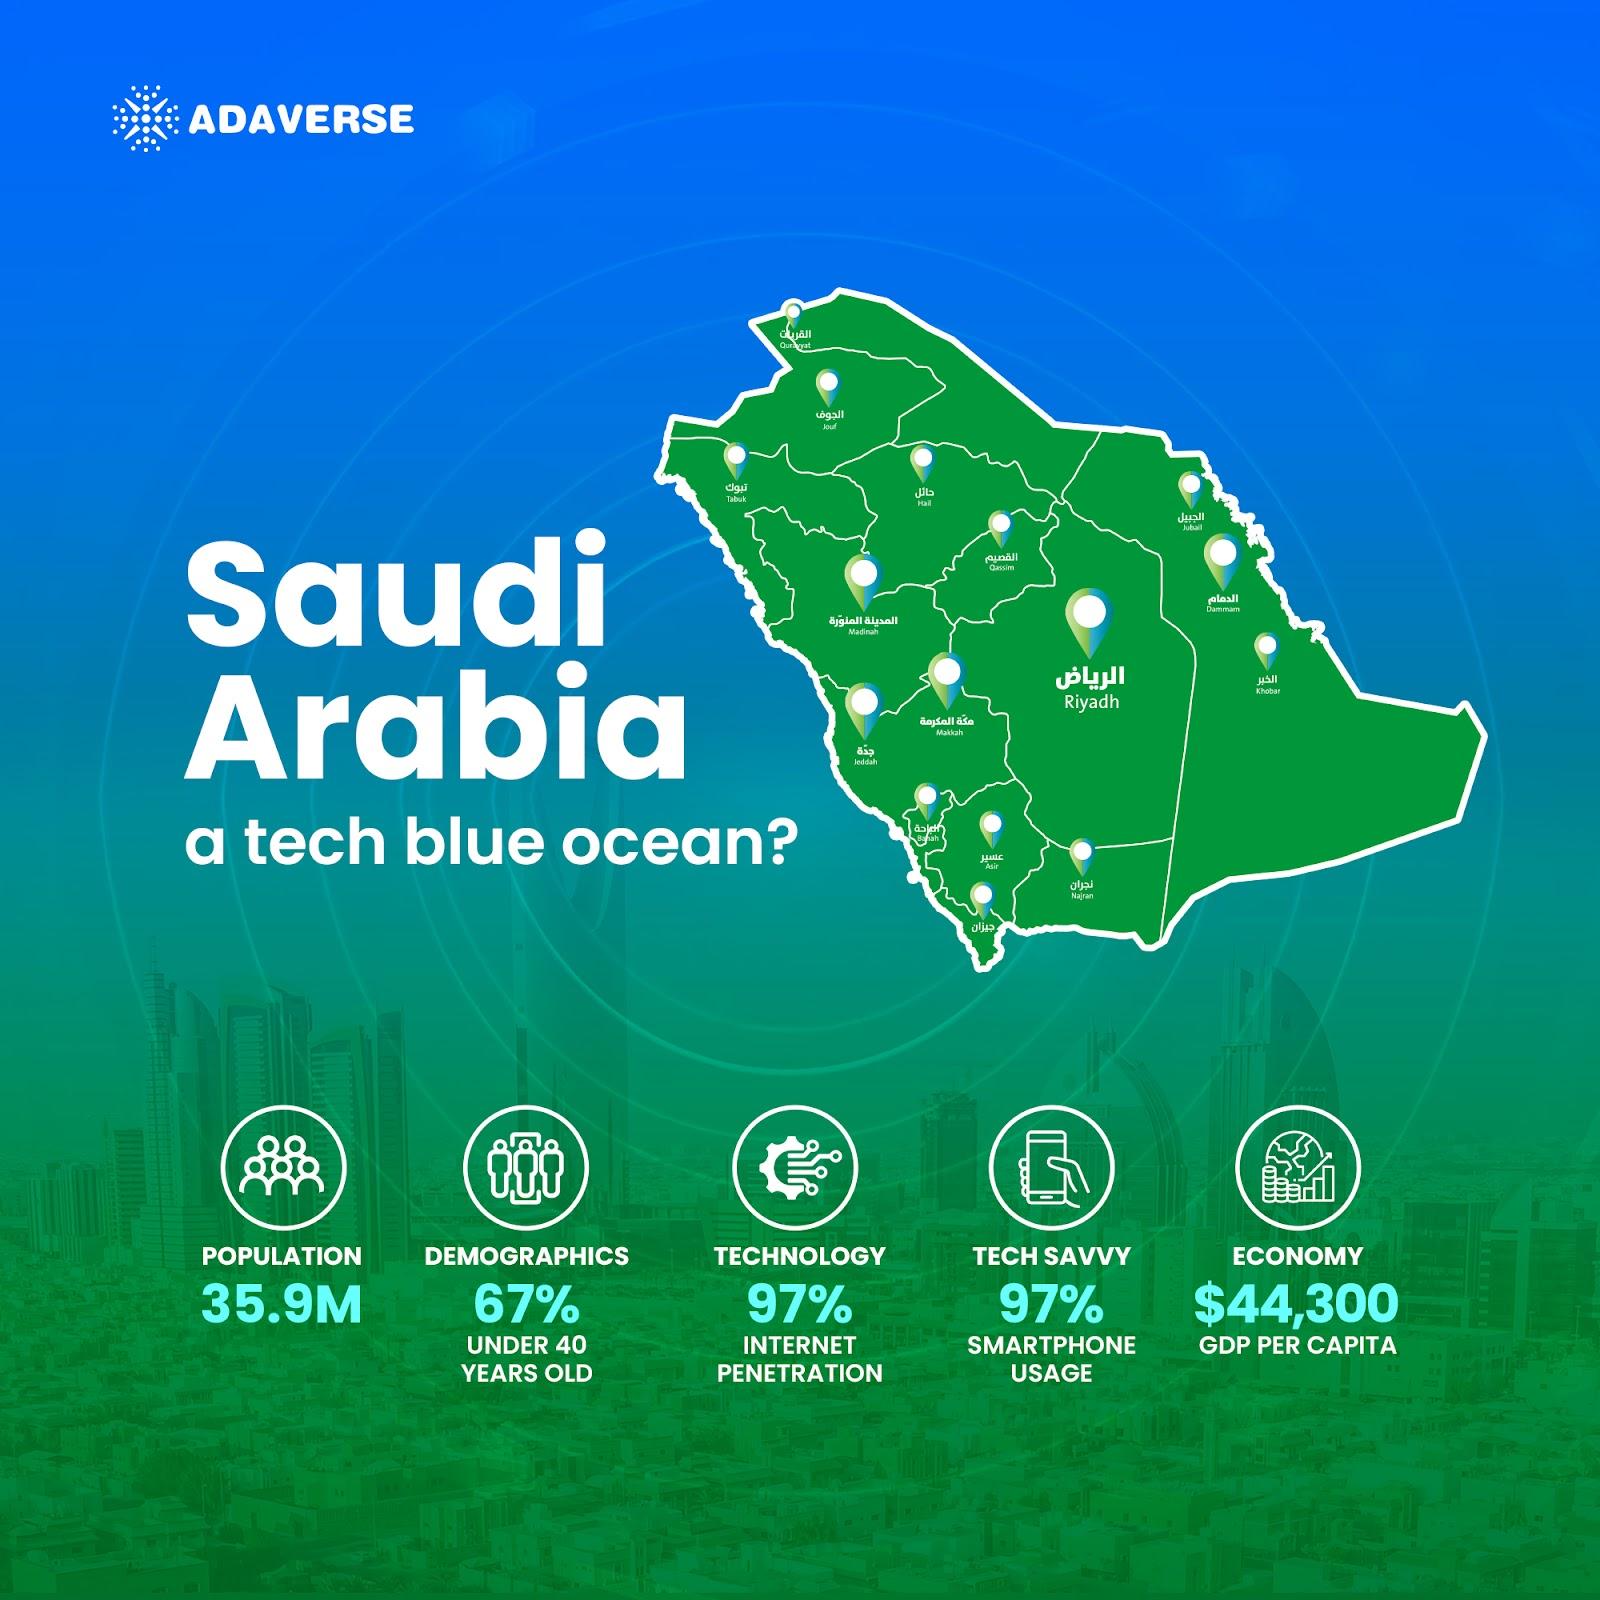 Adaverse 扩展投资组合，进军沙特Web3 市场